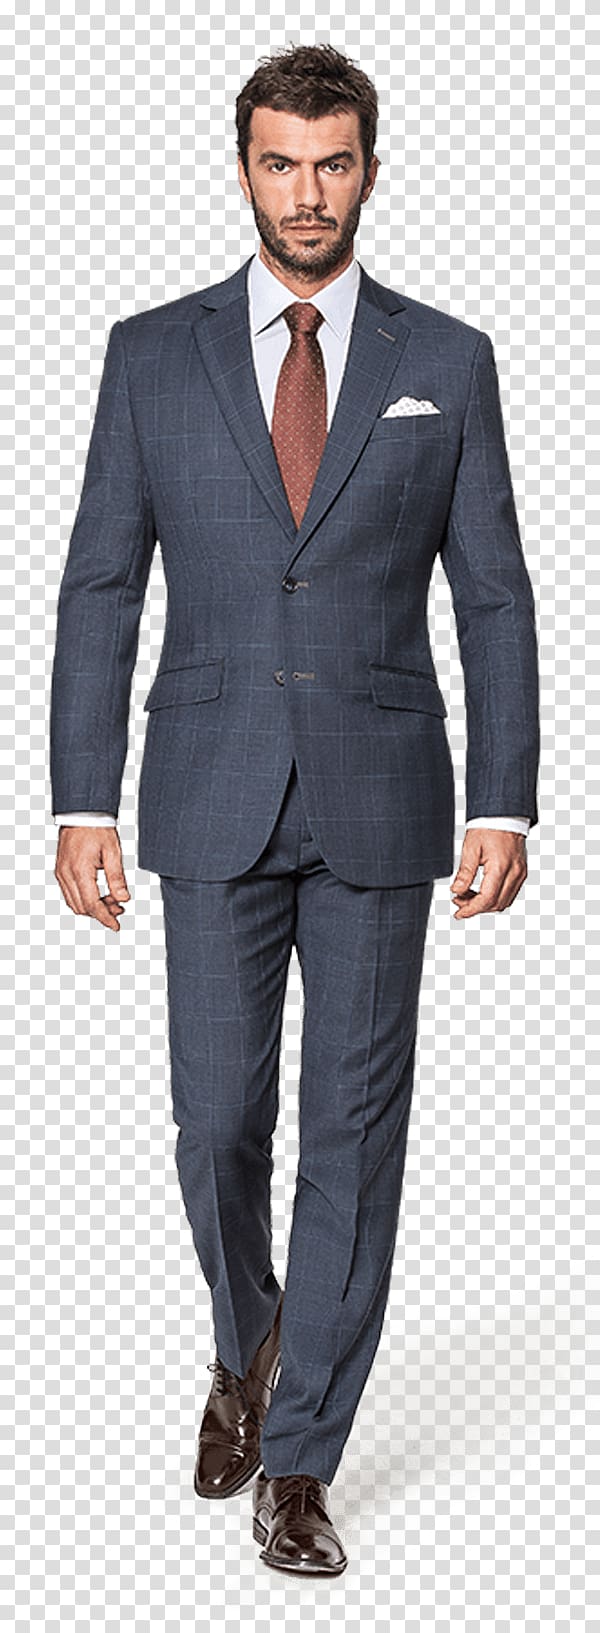 Suit Online shopping Tuxedo Navy blue, suit transparent background PNG ...